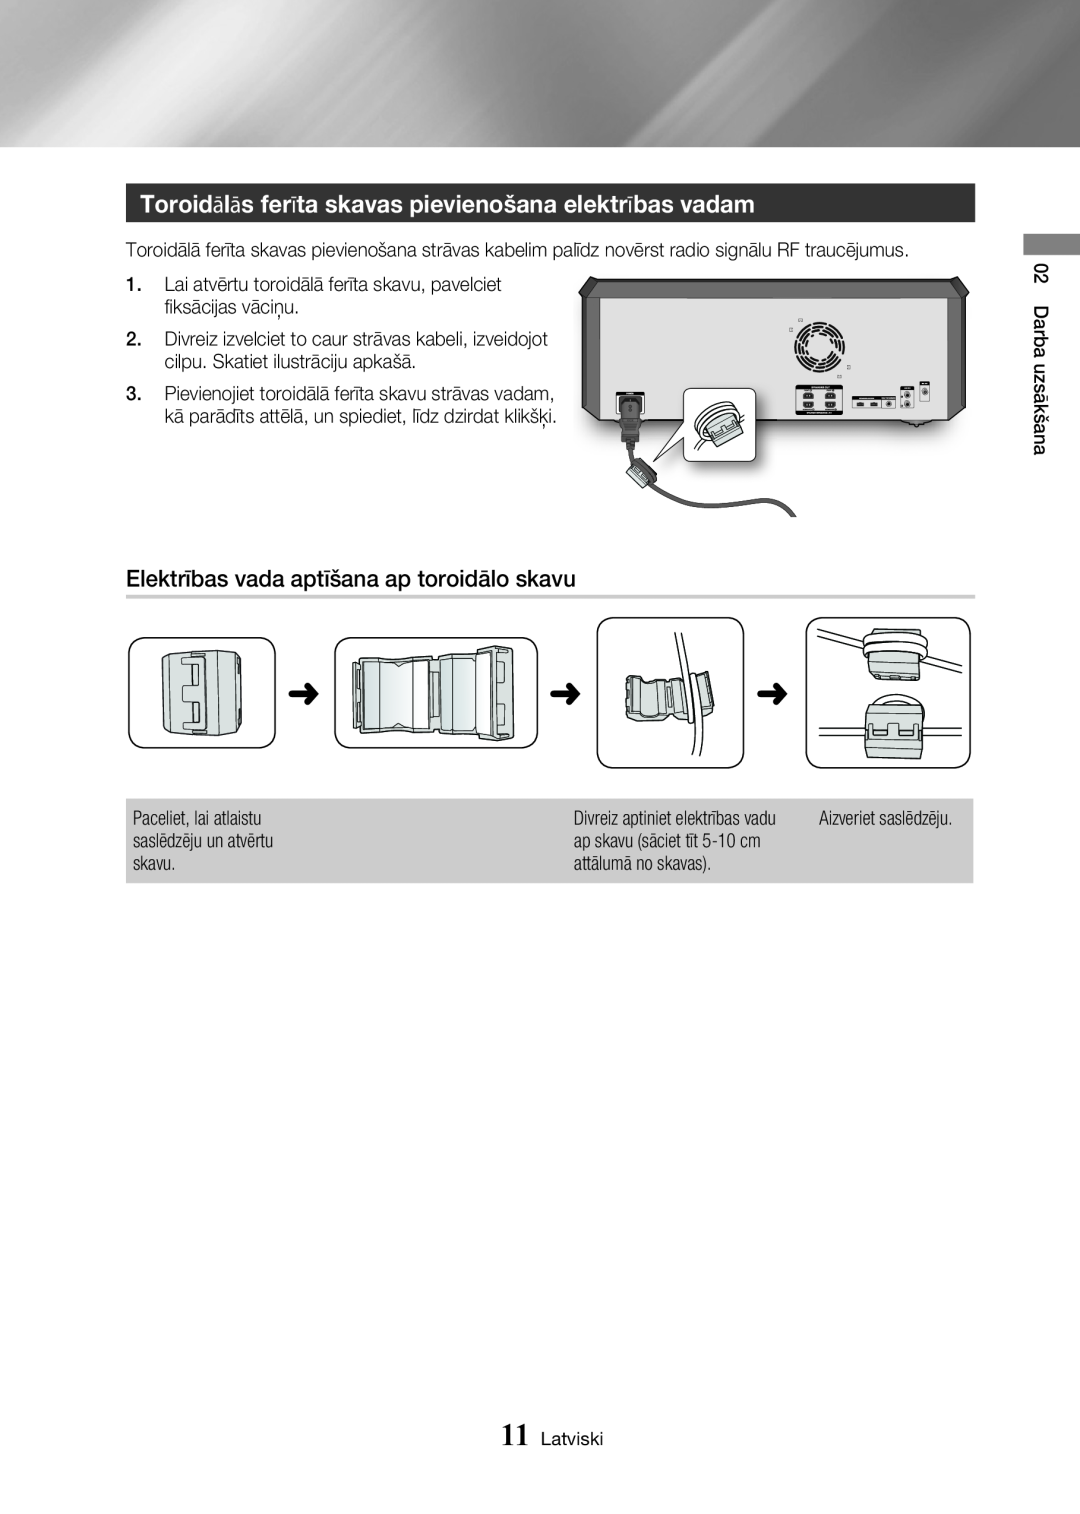 Samsung MX-HS8000/EN Toroidālās ferīta skavas pievienošana elektrības vadam, Elektrības vada aptīšana ap toroidālo skavu 